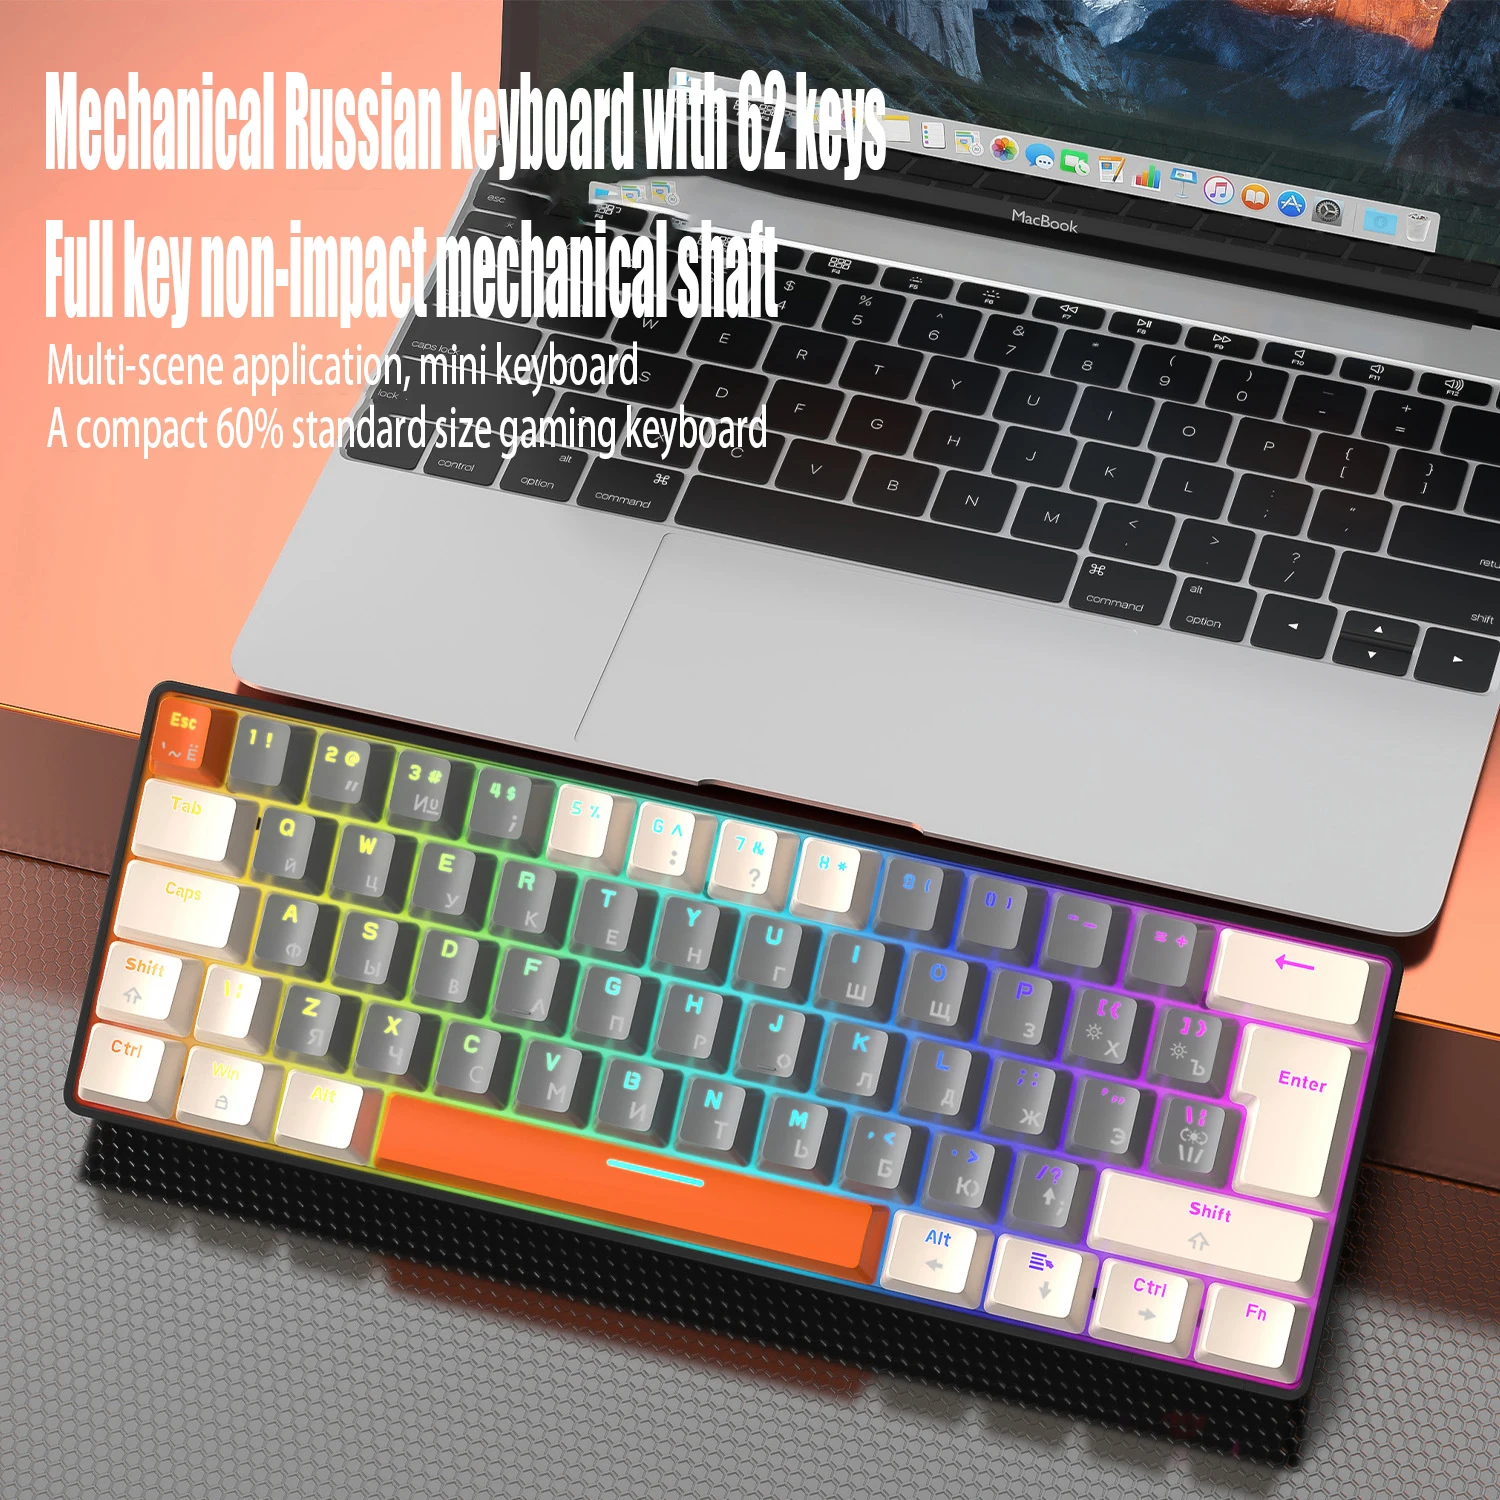 

Игровая механическая мини-клавиатура T60 с русской и английской раскладкой, 62 клавиши, RGB, Type-C, проводная игровая клавиатура NKRO 60%, эргономичная клавиатура для геймеров